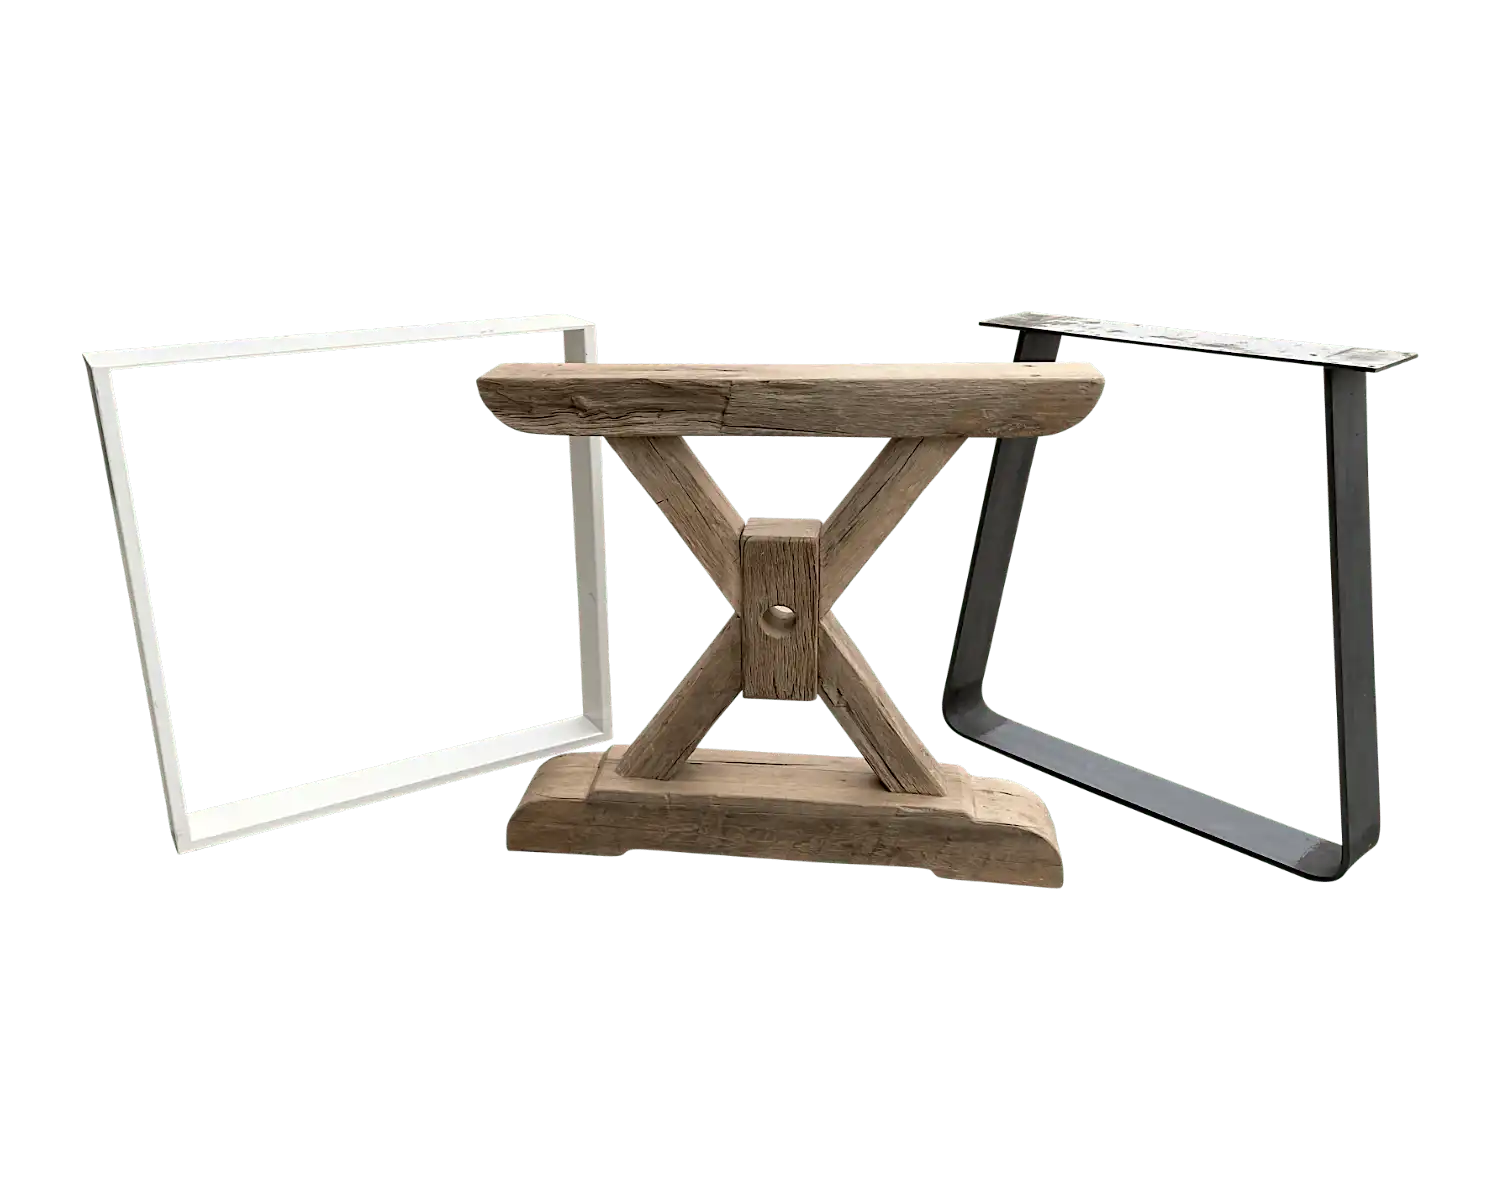 Pieds de table contrastés : un en vieux bois rustique et l'autre en métal noir, illustrant la diversité des styles.